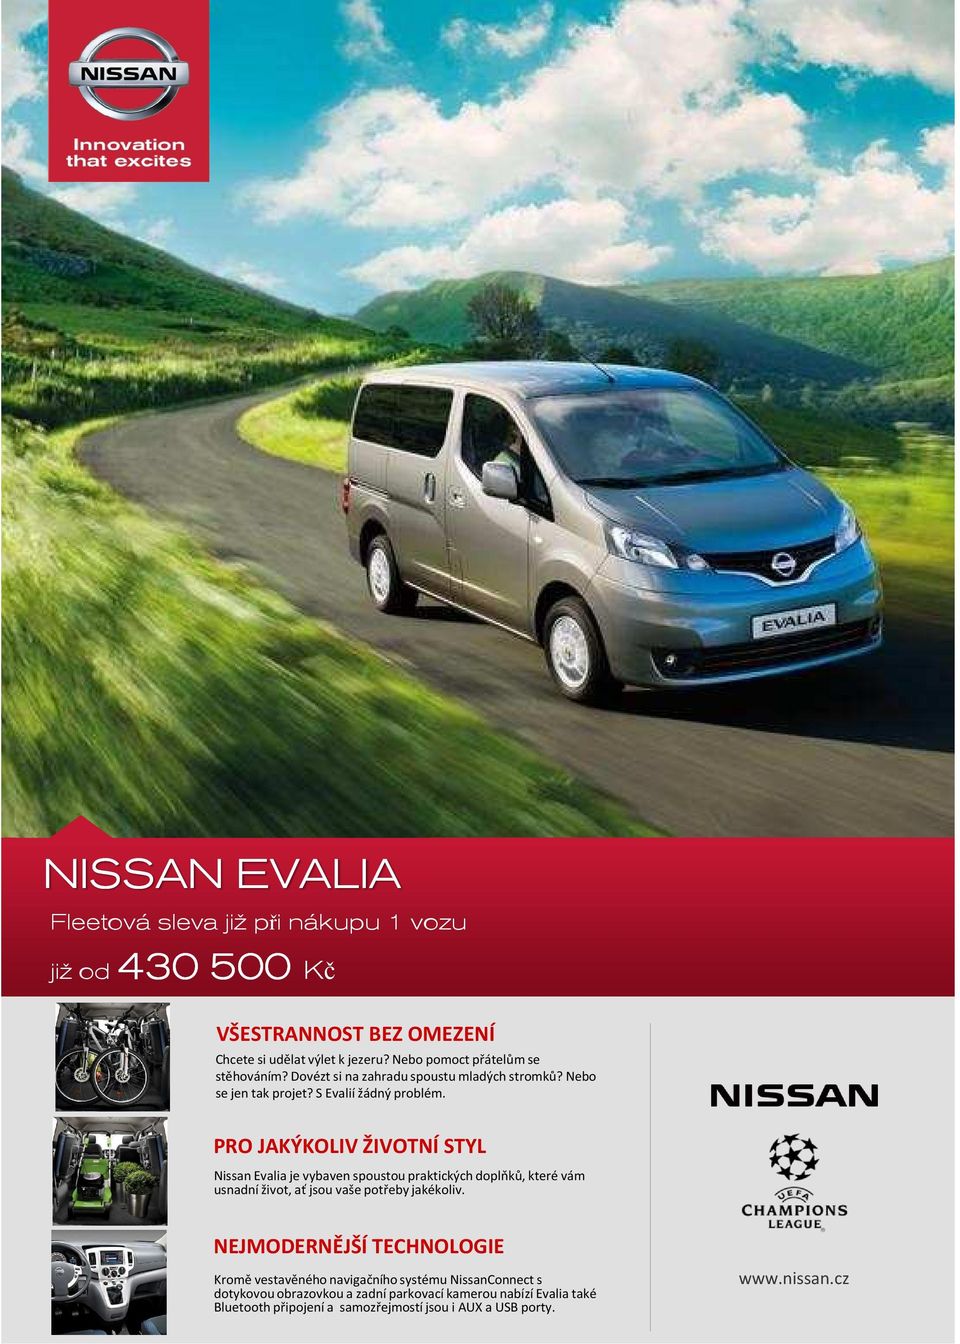 PRO JAKÝKOLIV ŽIVOTNÍ STYL Nissan Evaia je vybaven spoustou praktických dopňků, které vám usnadní život, ať jsou vaše potřeby jakékoiv.